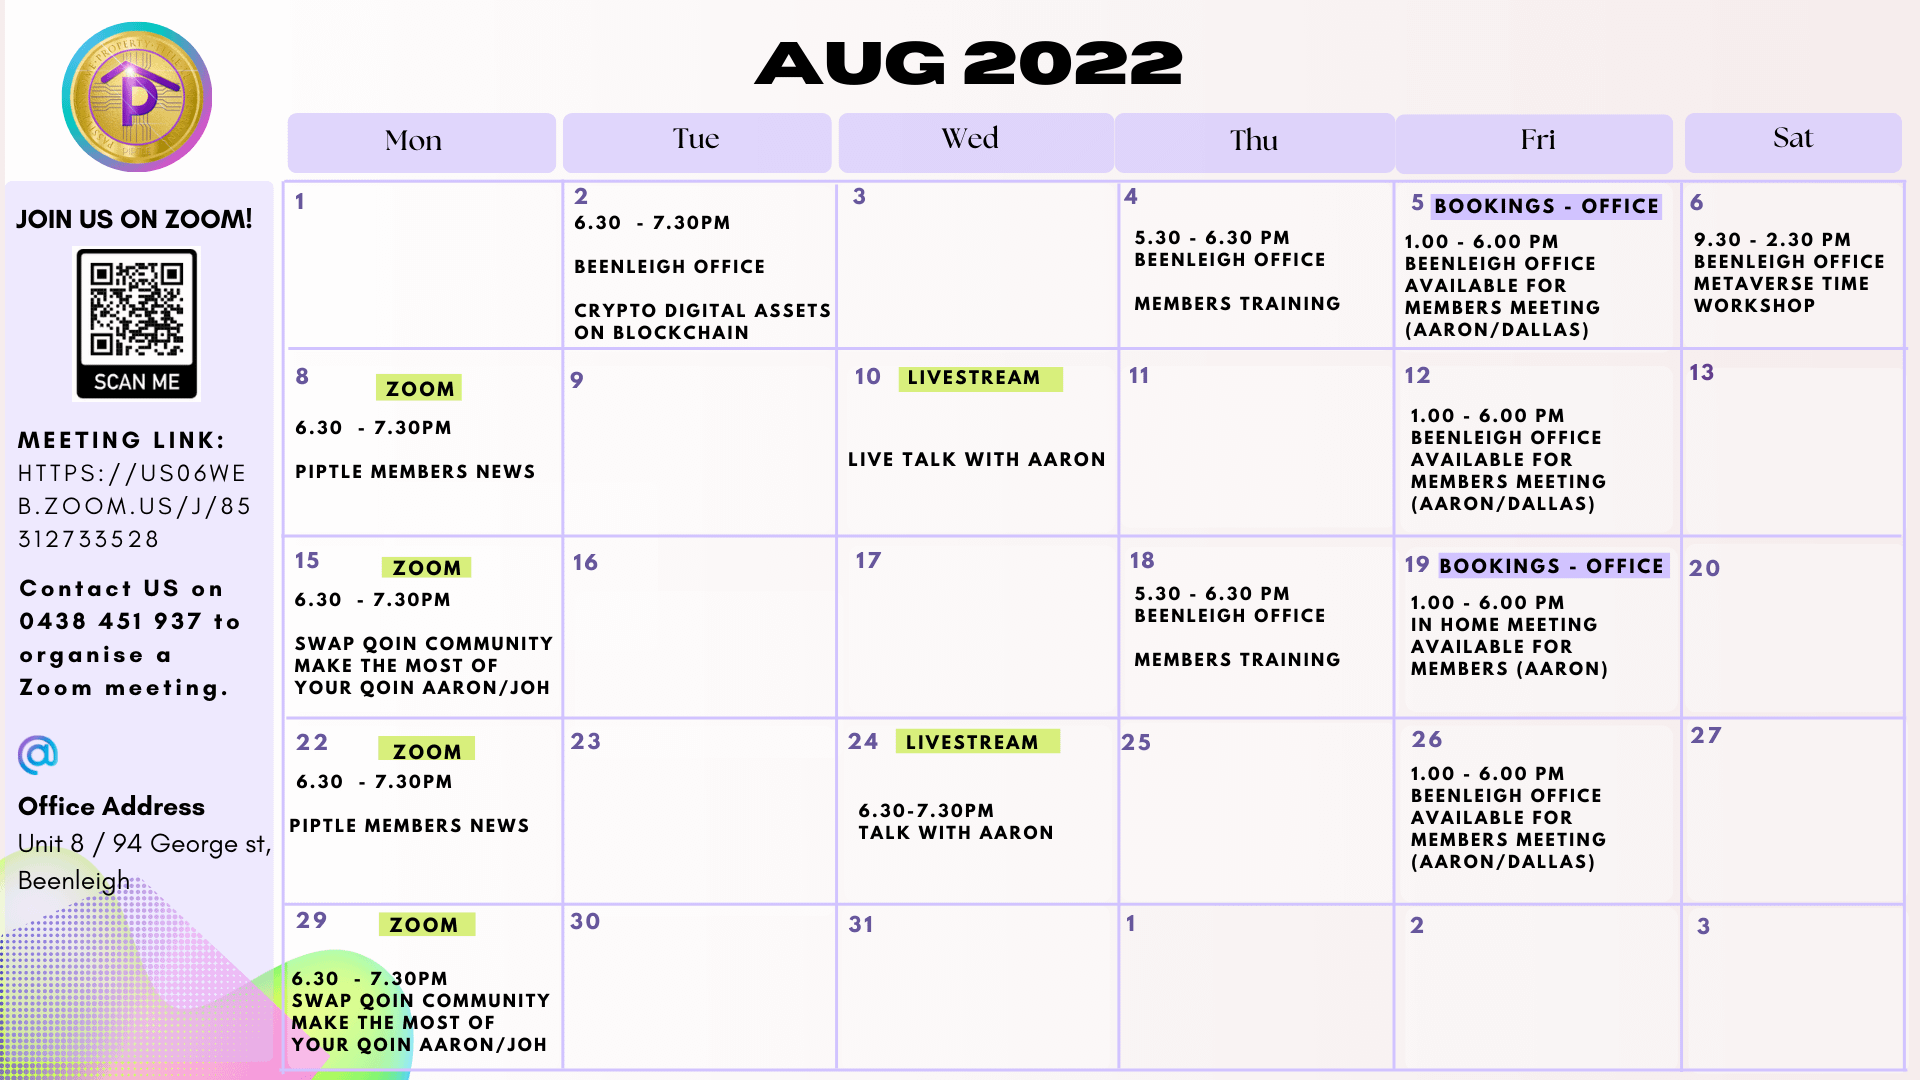 August Calendar 2022